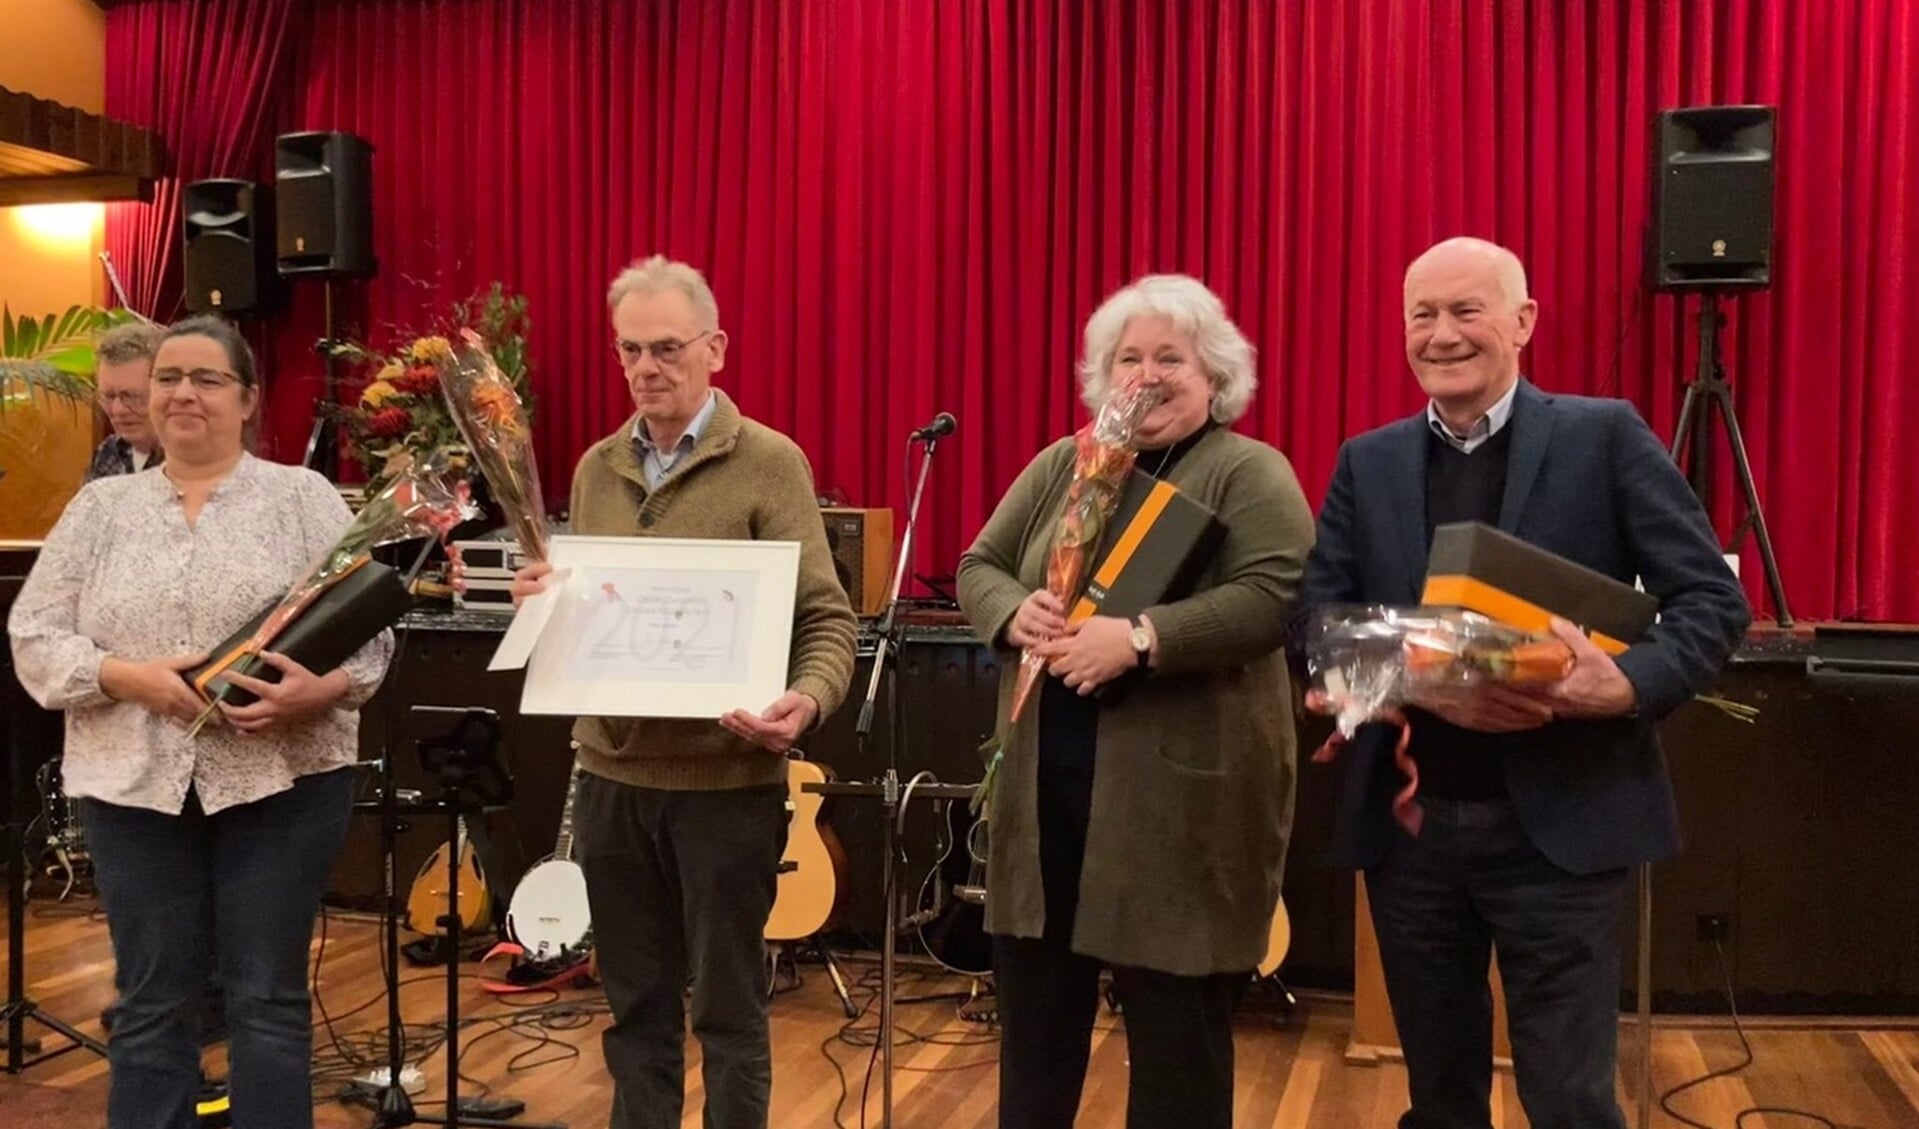  De winnaars van het Streektaaldictee zijn Willy Mentink, Jan Oonk, Mirjam Koning en Gerard Bomers. Foto: Maarten Beernink.